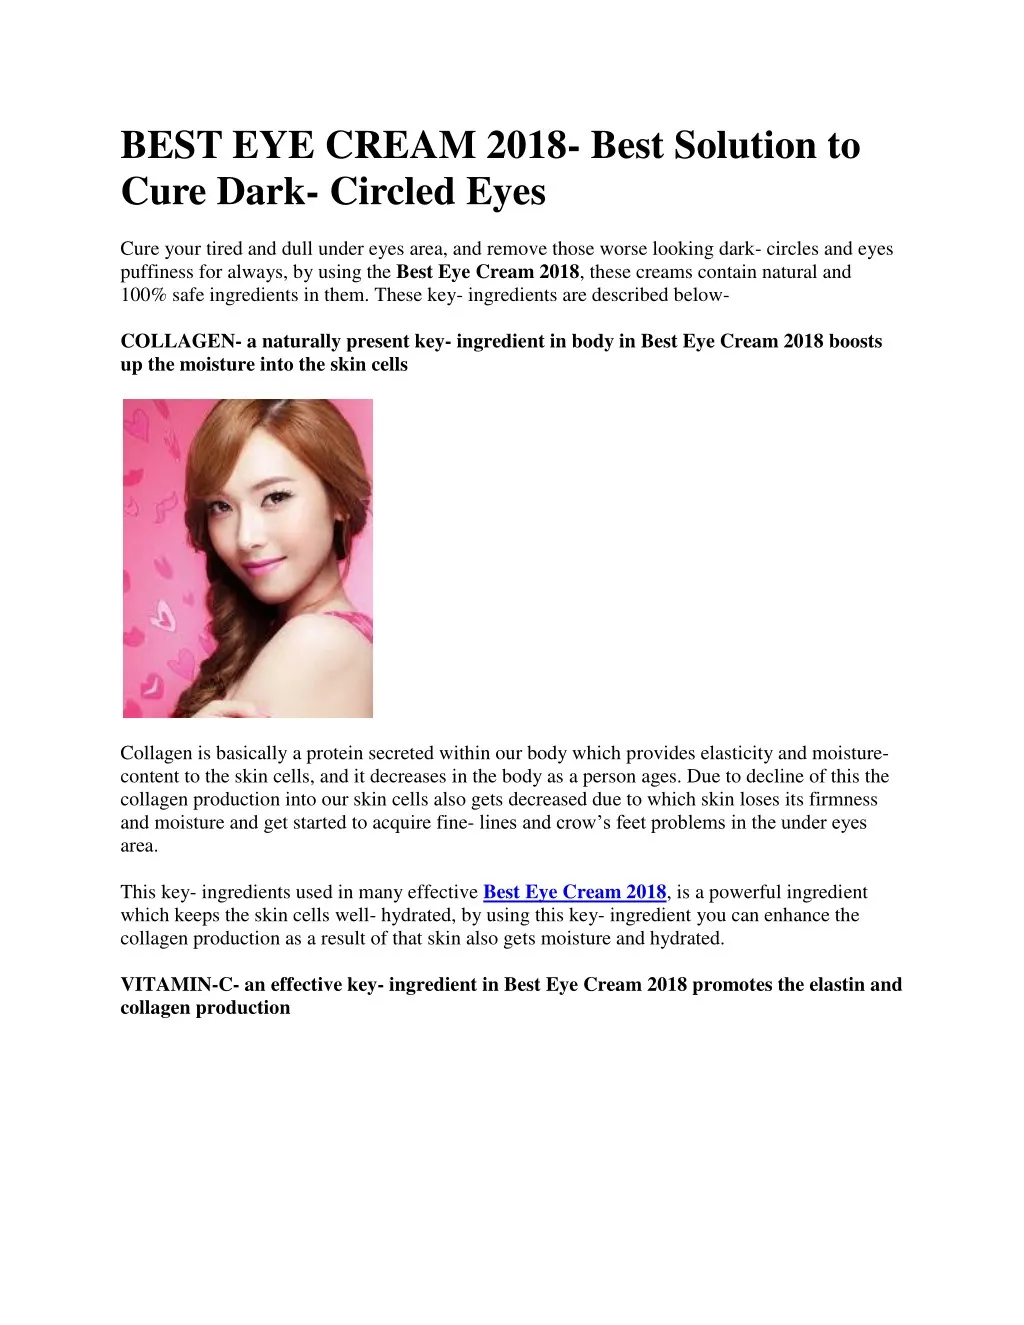 best eye cream 2018 best solution to cure dark